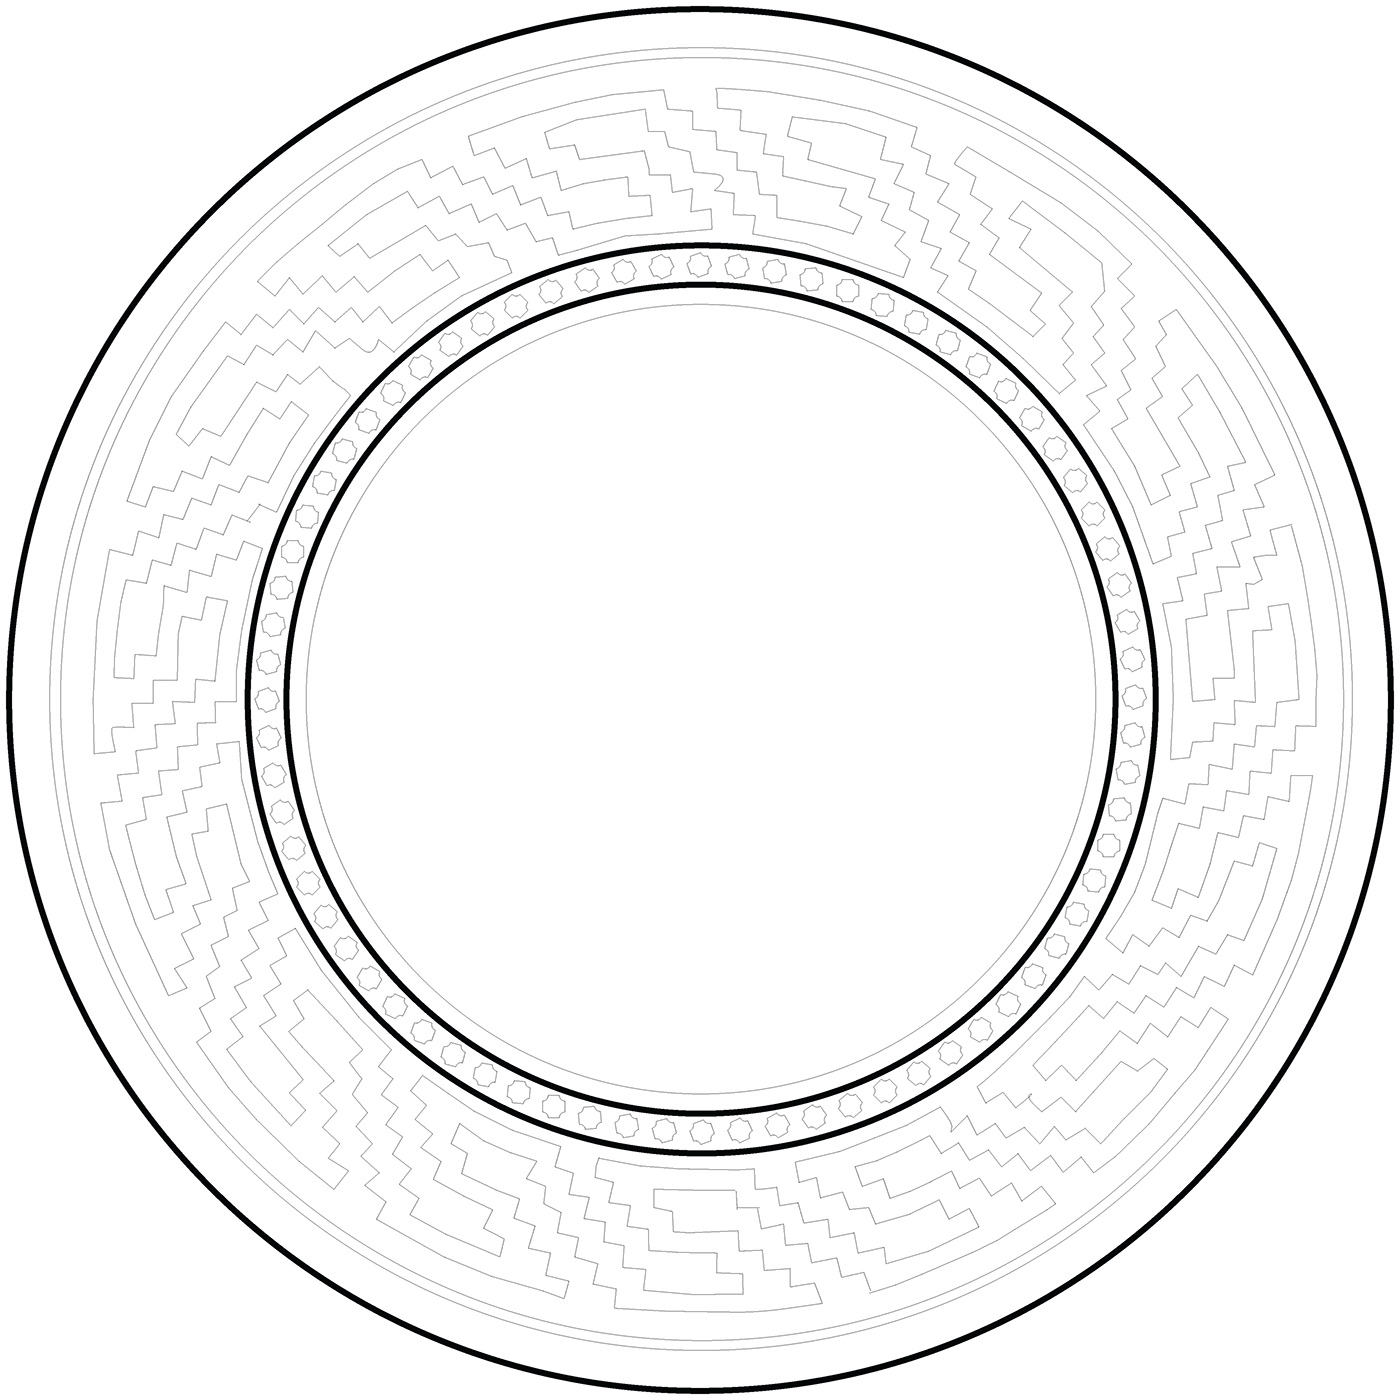 Image may contain: circle